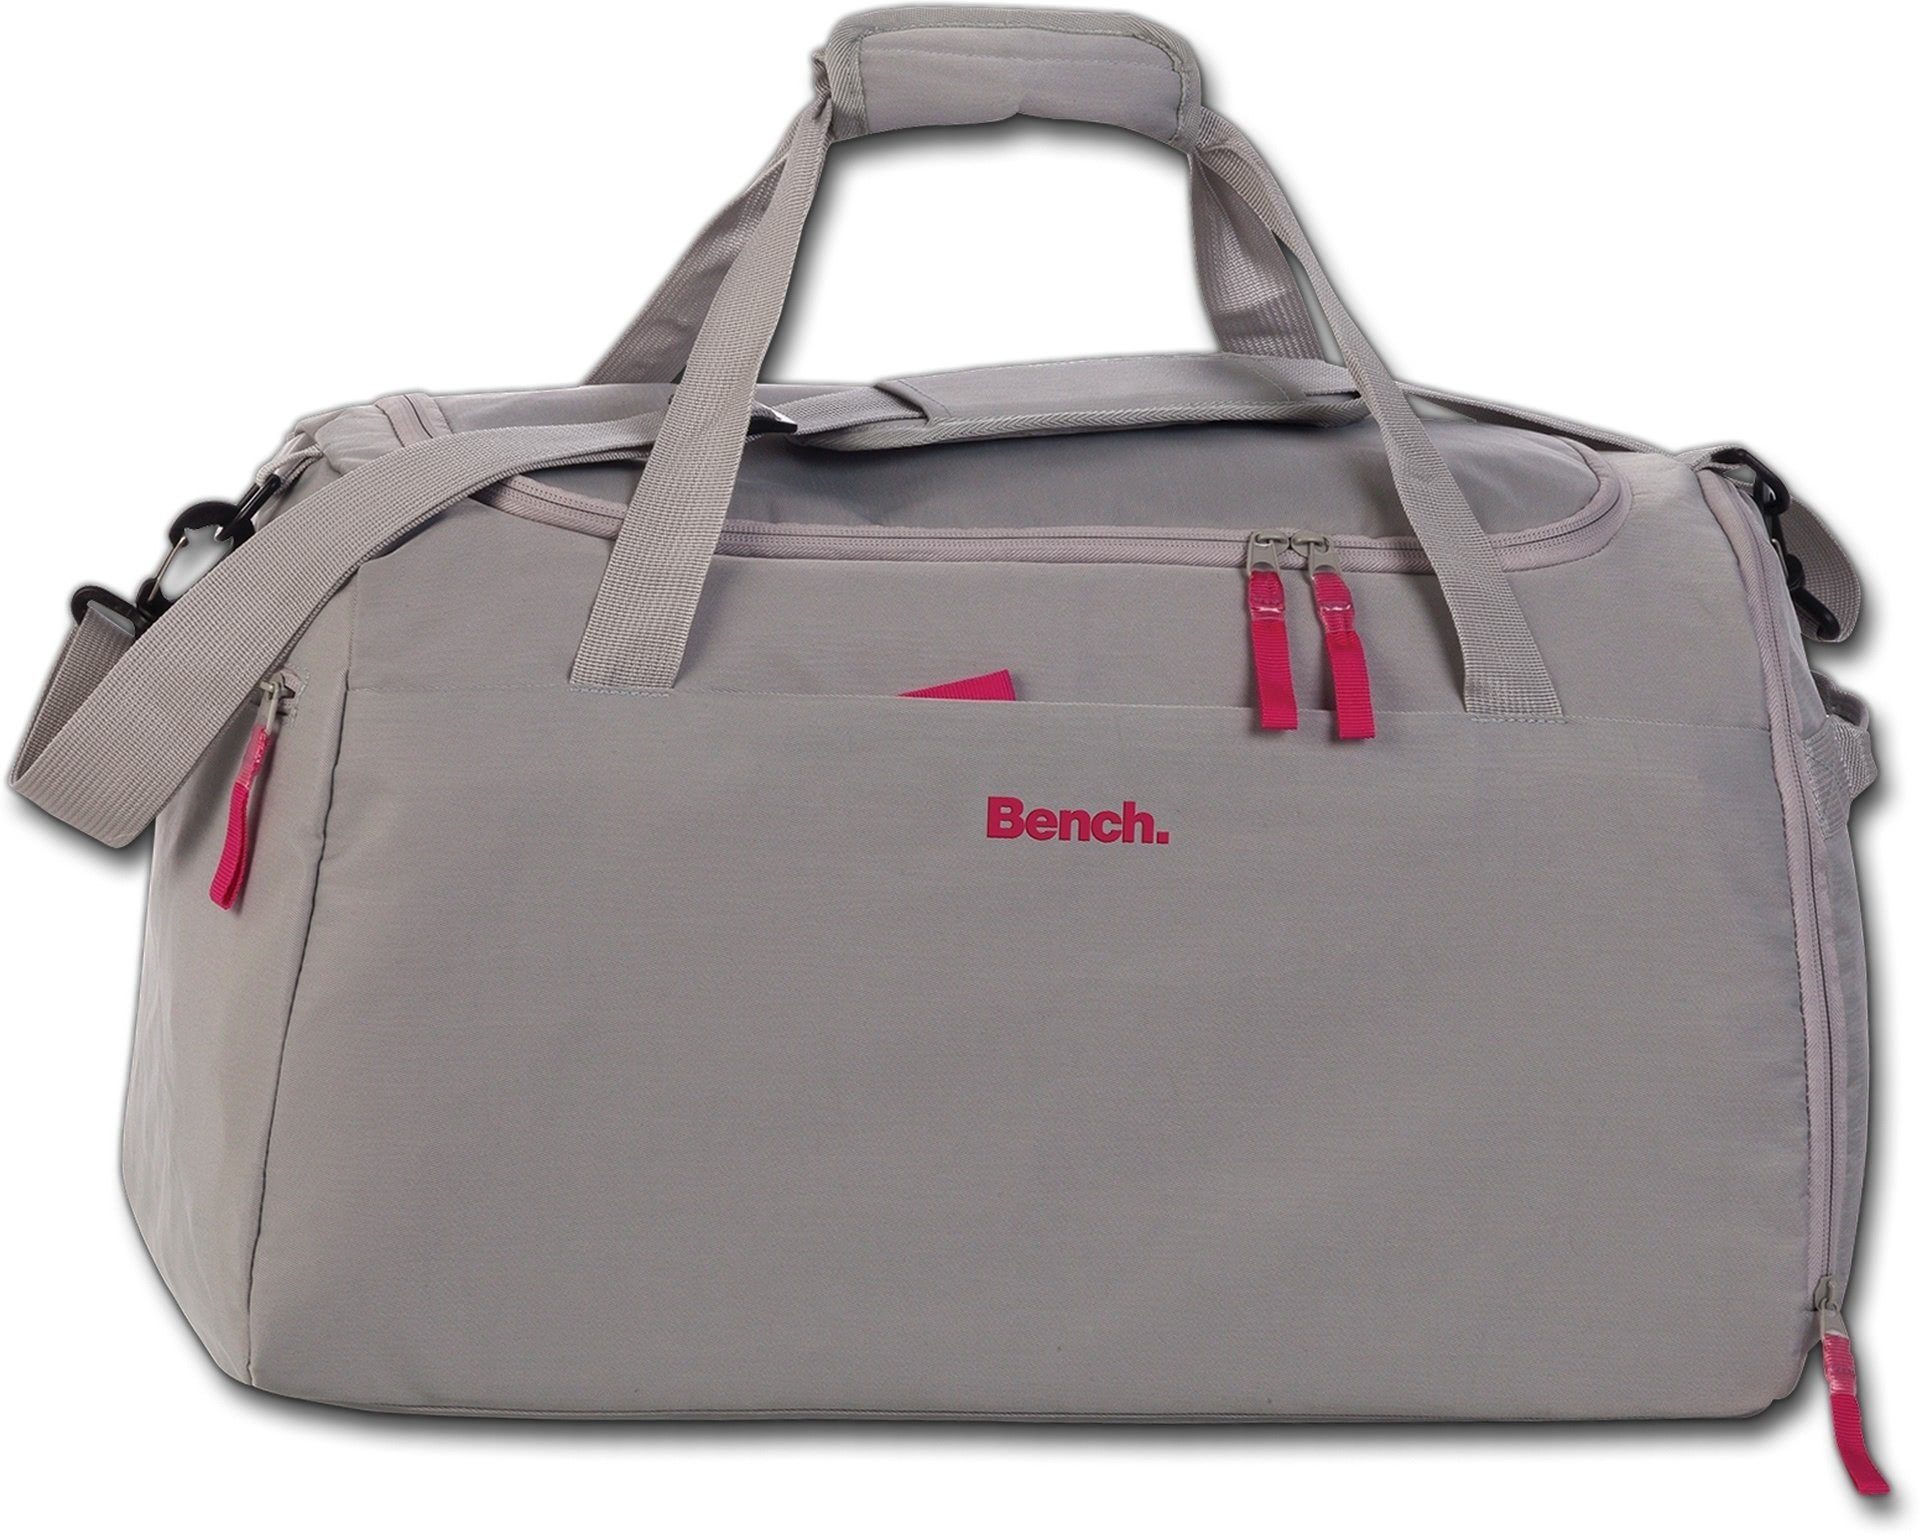 groß Tasche Damen uni Sporttasche Bench. grau, grau, Nylon Sporttasche 50x30x29cm, Damen Nylon Bench